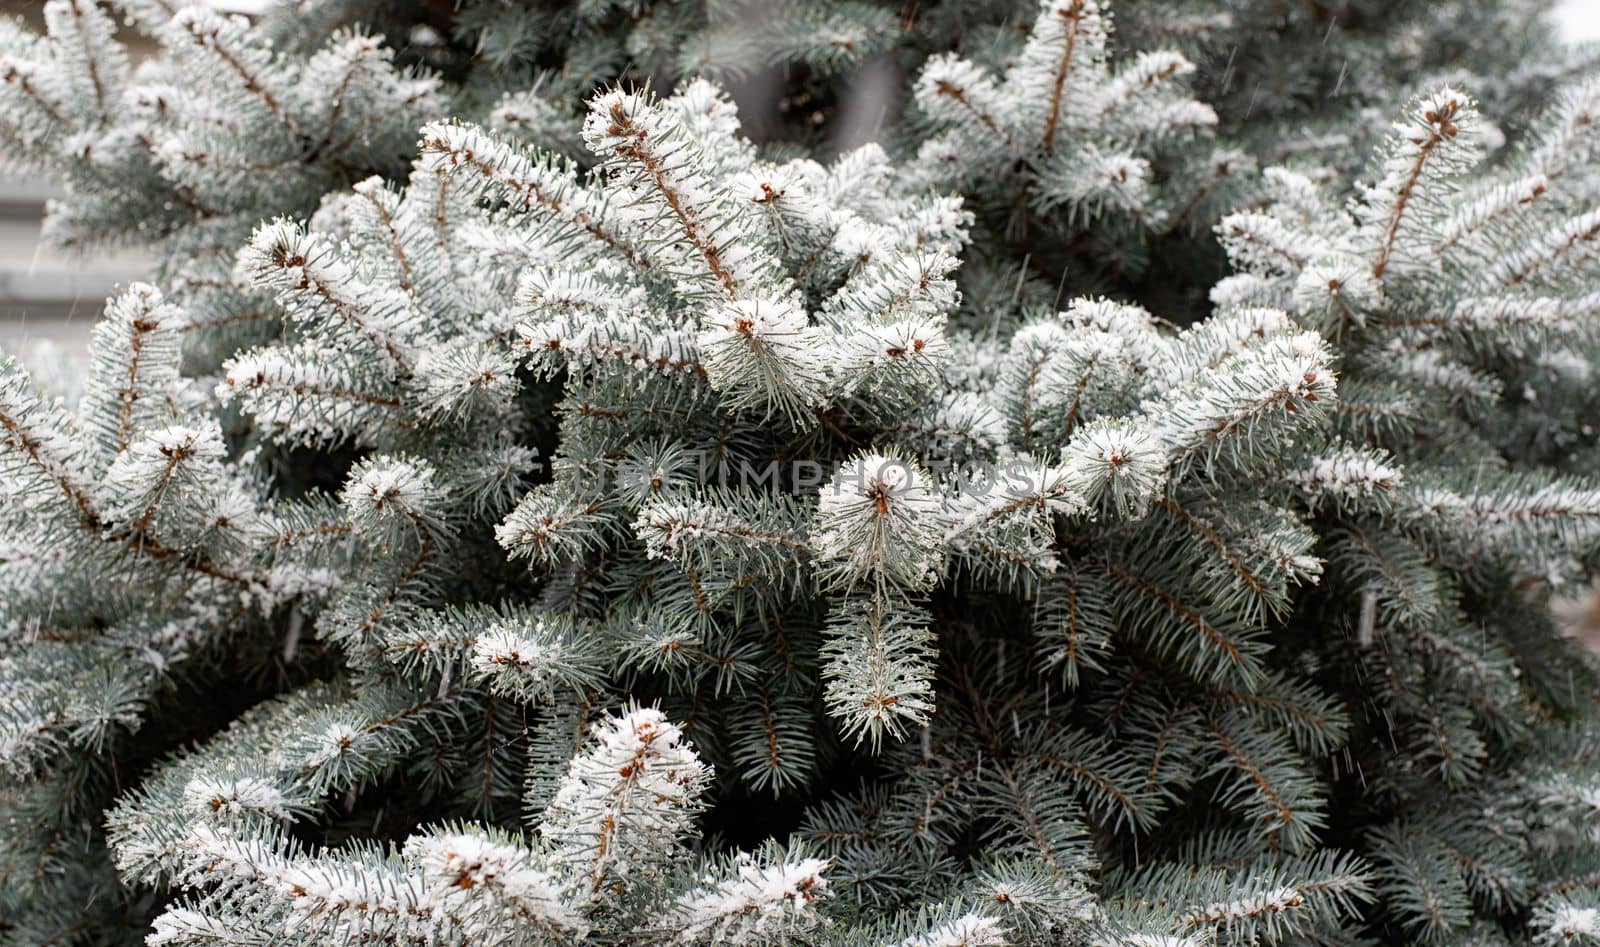 Texture of green pine fir branches